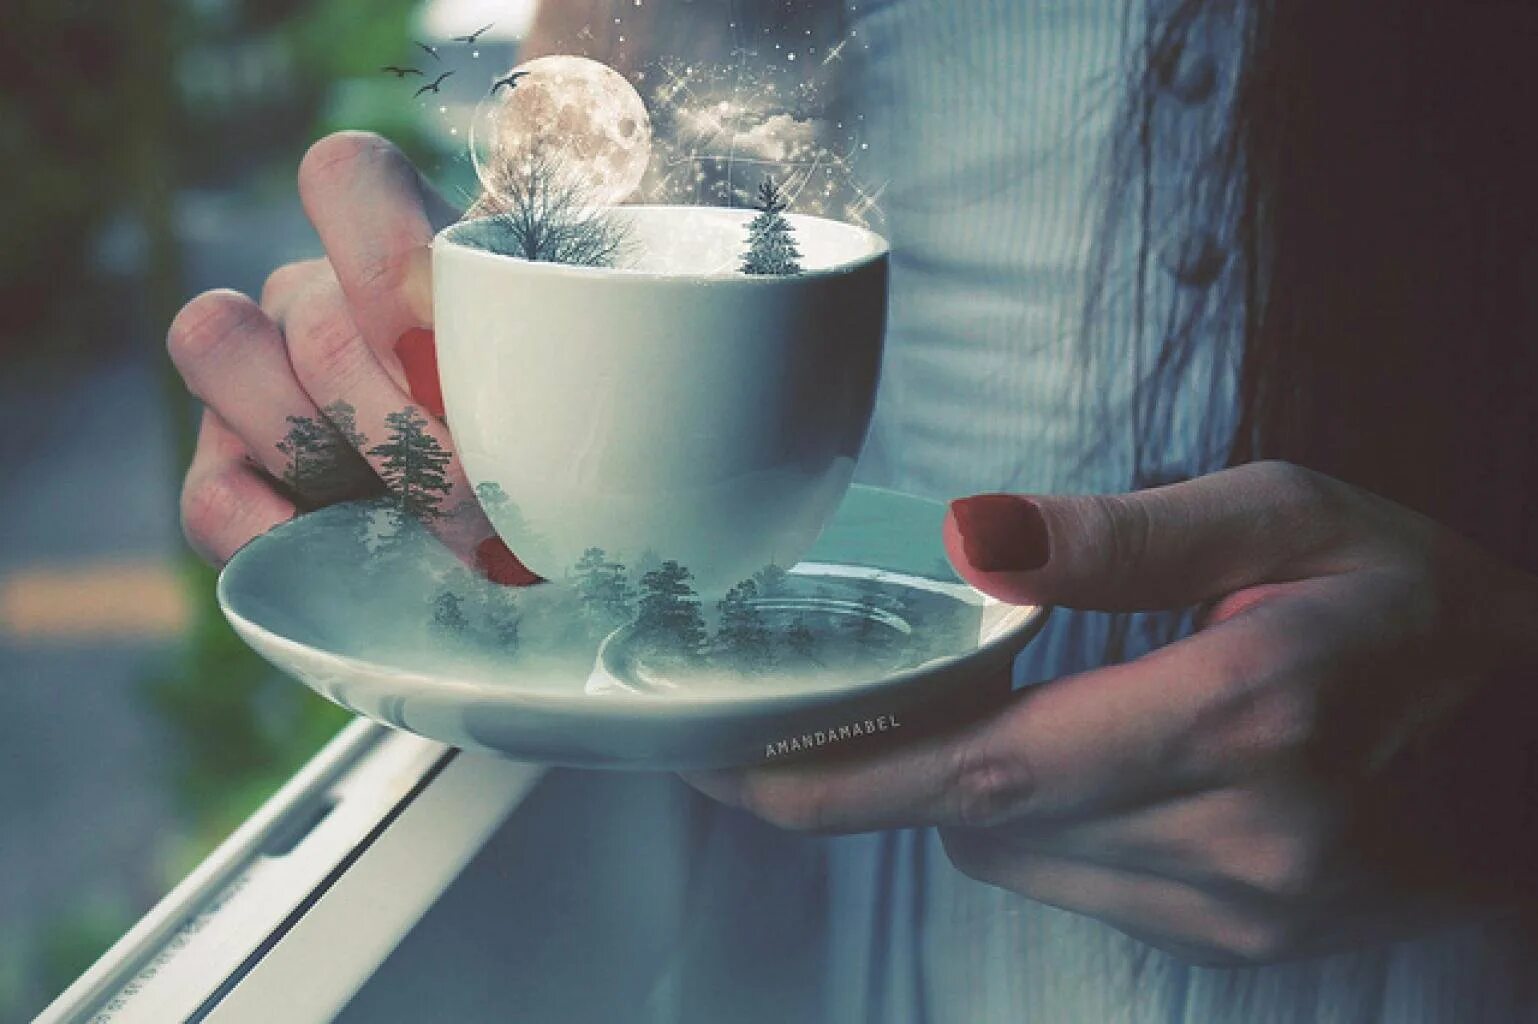 Кружка чая в руках. Волшебное утро. Доброе волшебное утро. Красота в простых вещах. Улыбка согревает душу